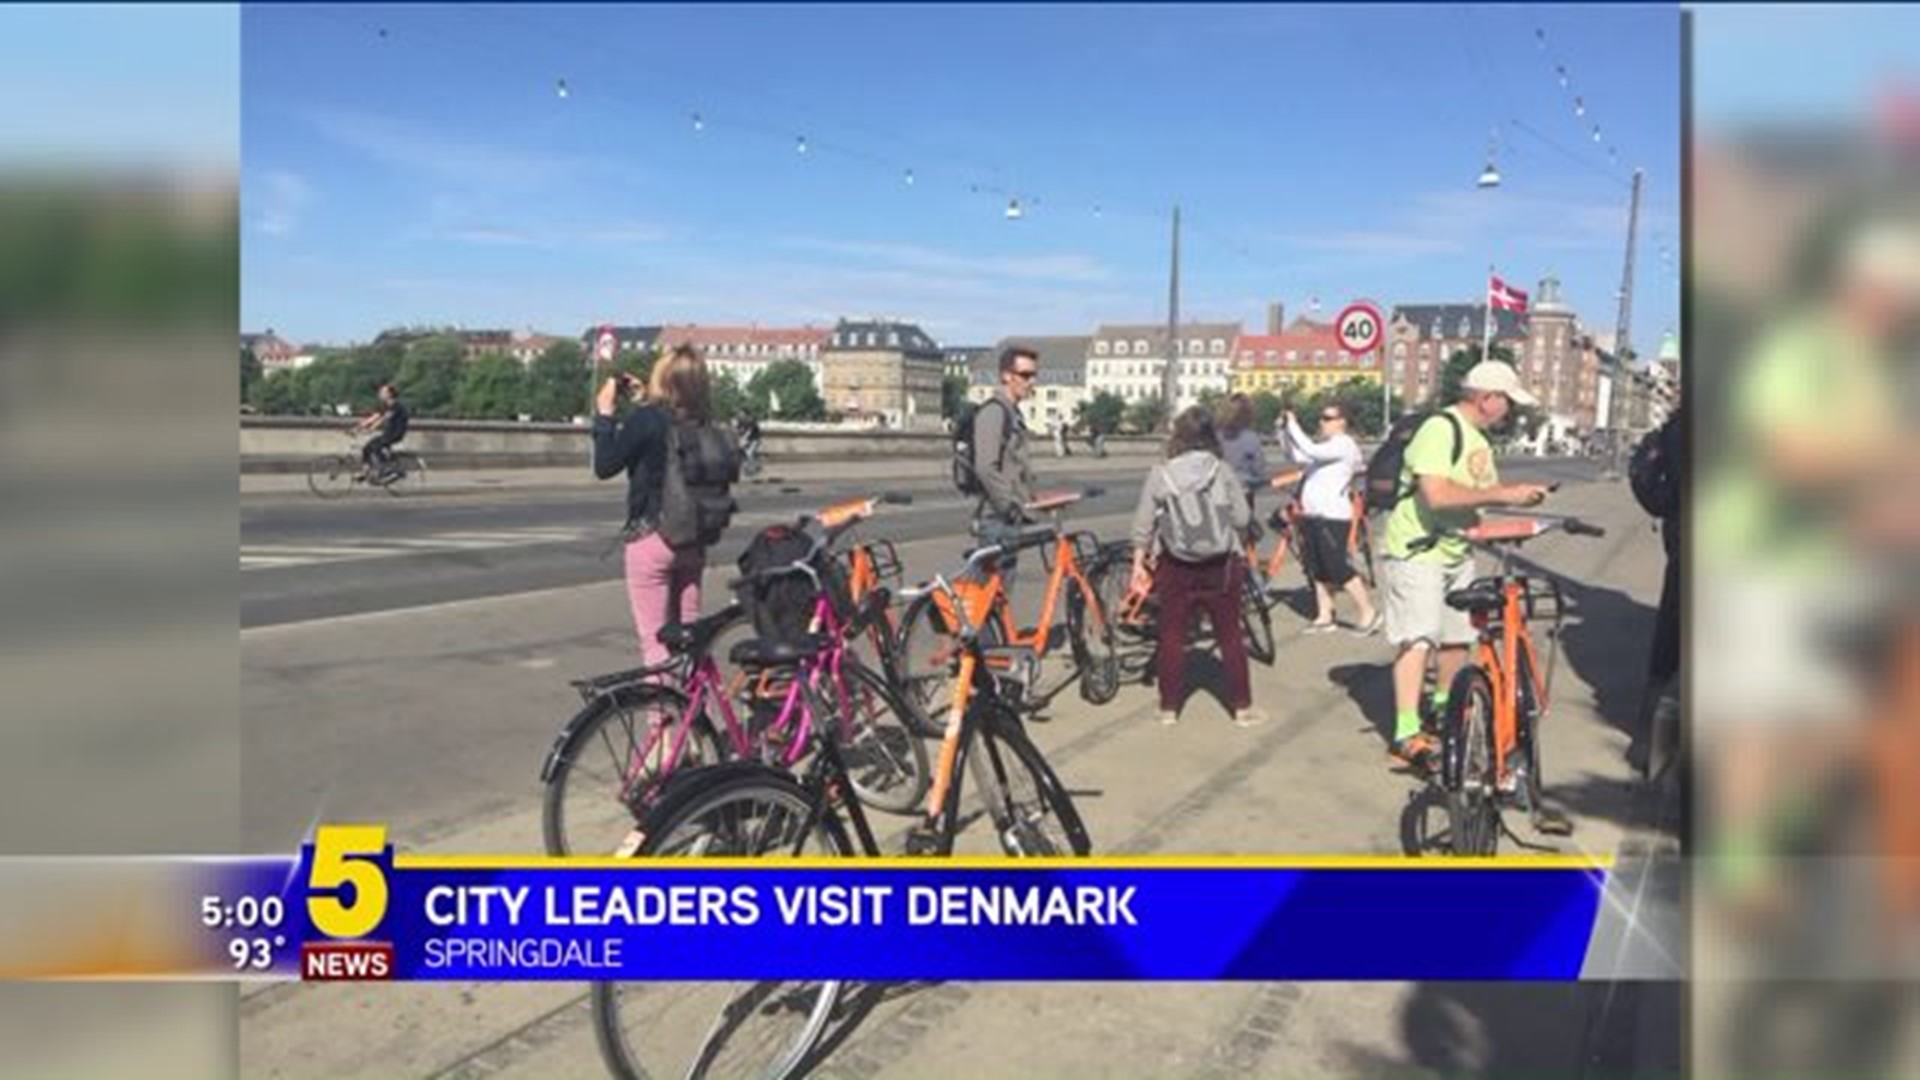 CITY LEADERS VISIT COPENHAGEN